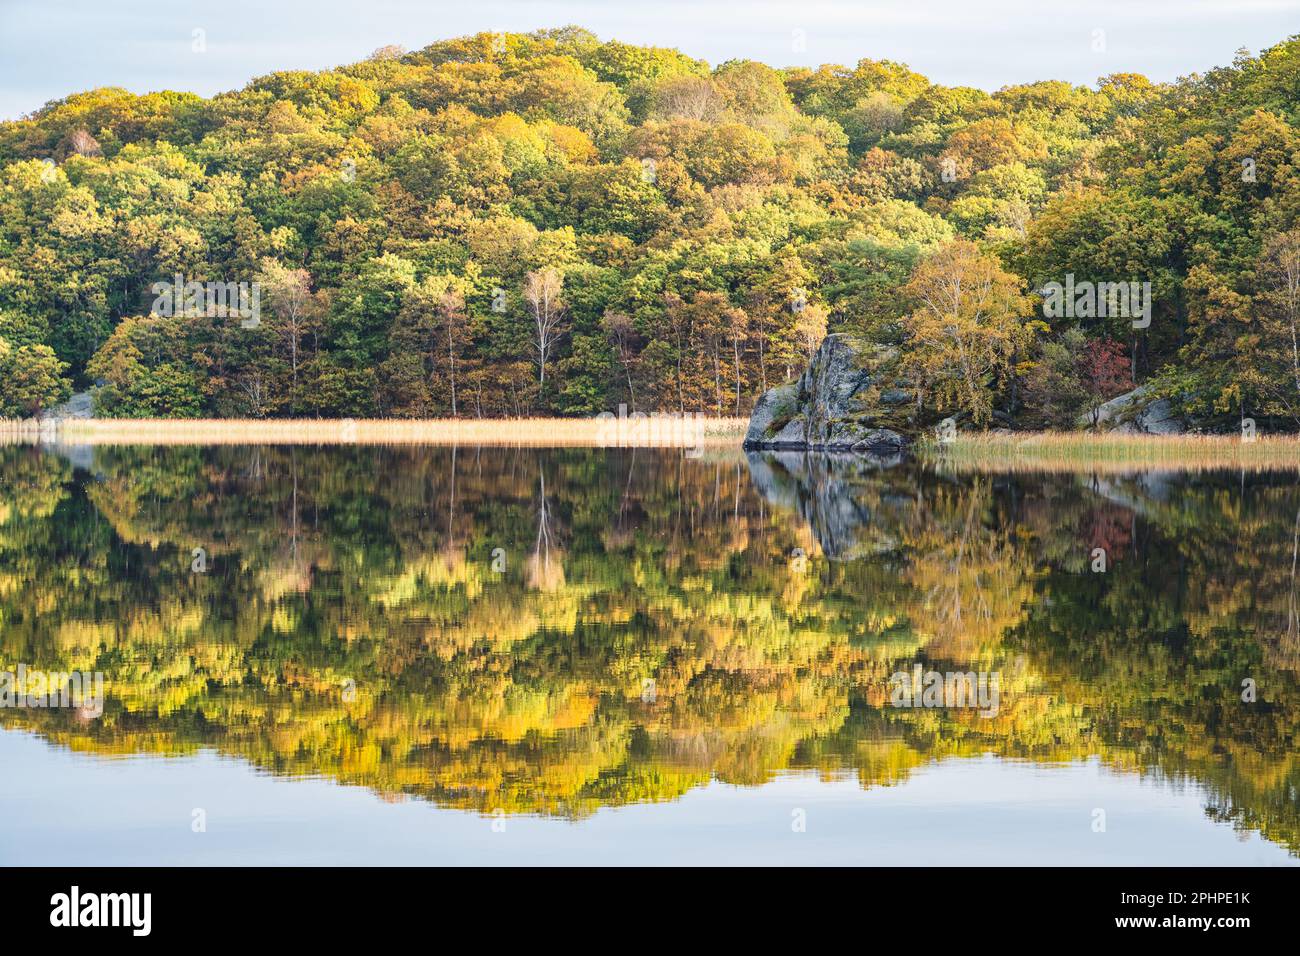 Una silenziosa e serena scena autunnale in Svezia; acque tranquille del lago che riflettono gli alberi e le piante della foresta incontaminata. Foto Stock